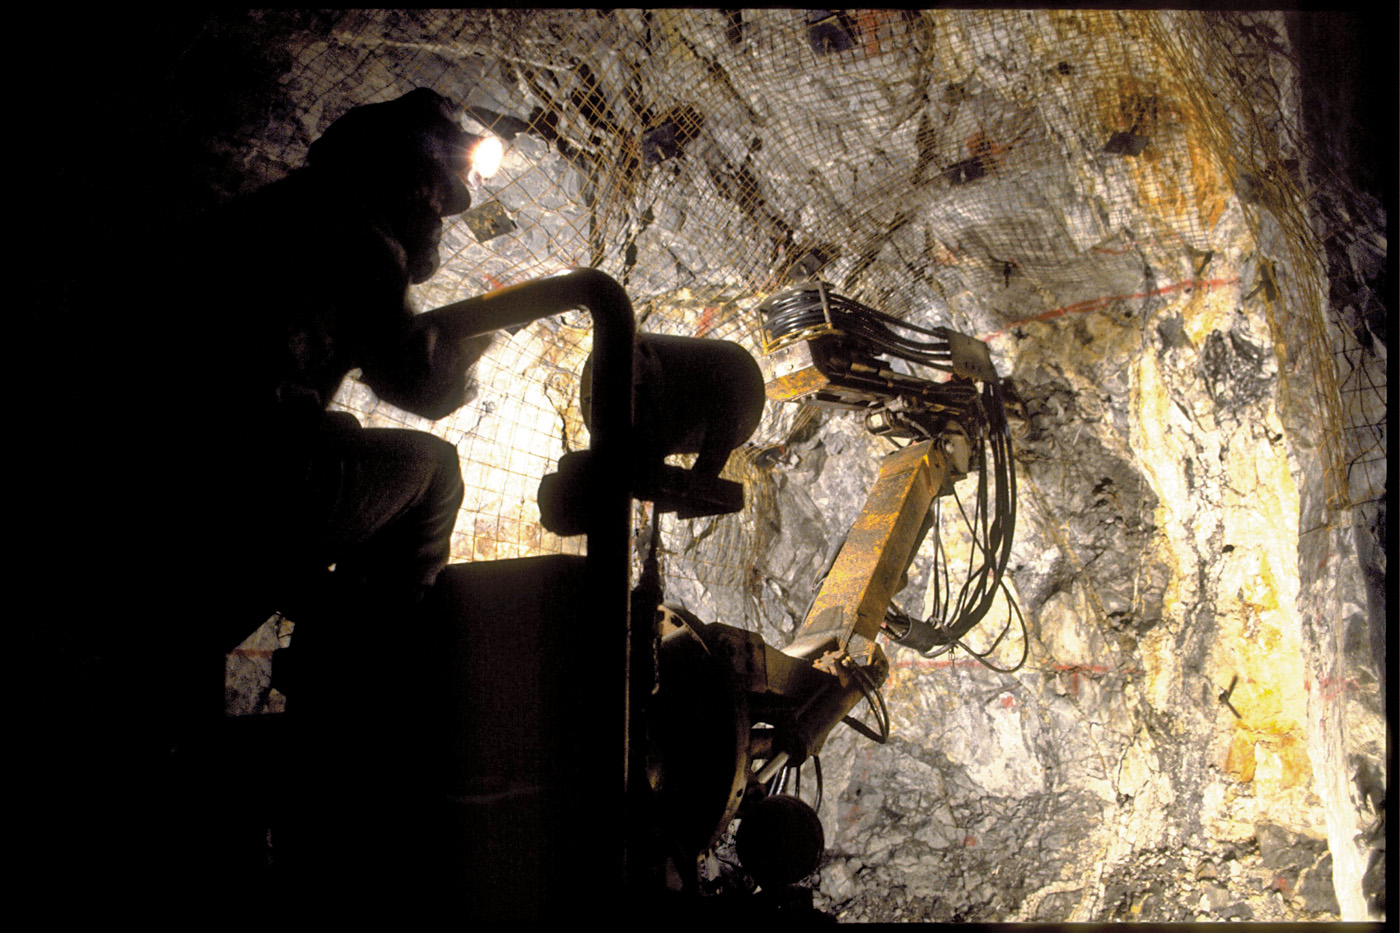 歴史ある鉱山運営や
新プロジェクト進行の資源事業